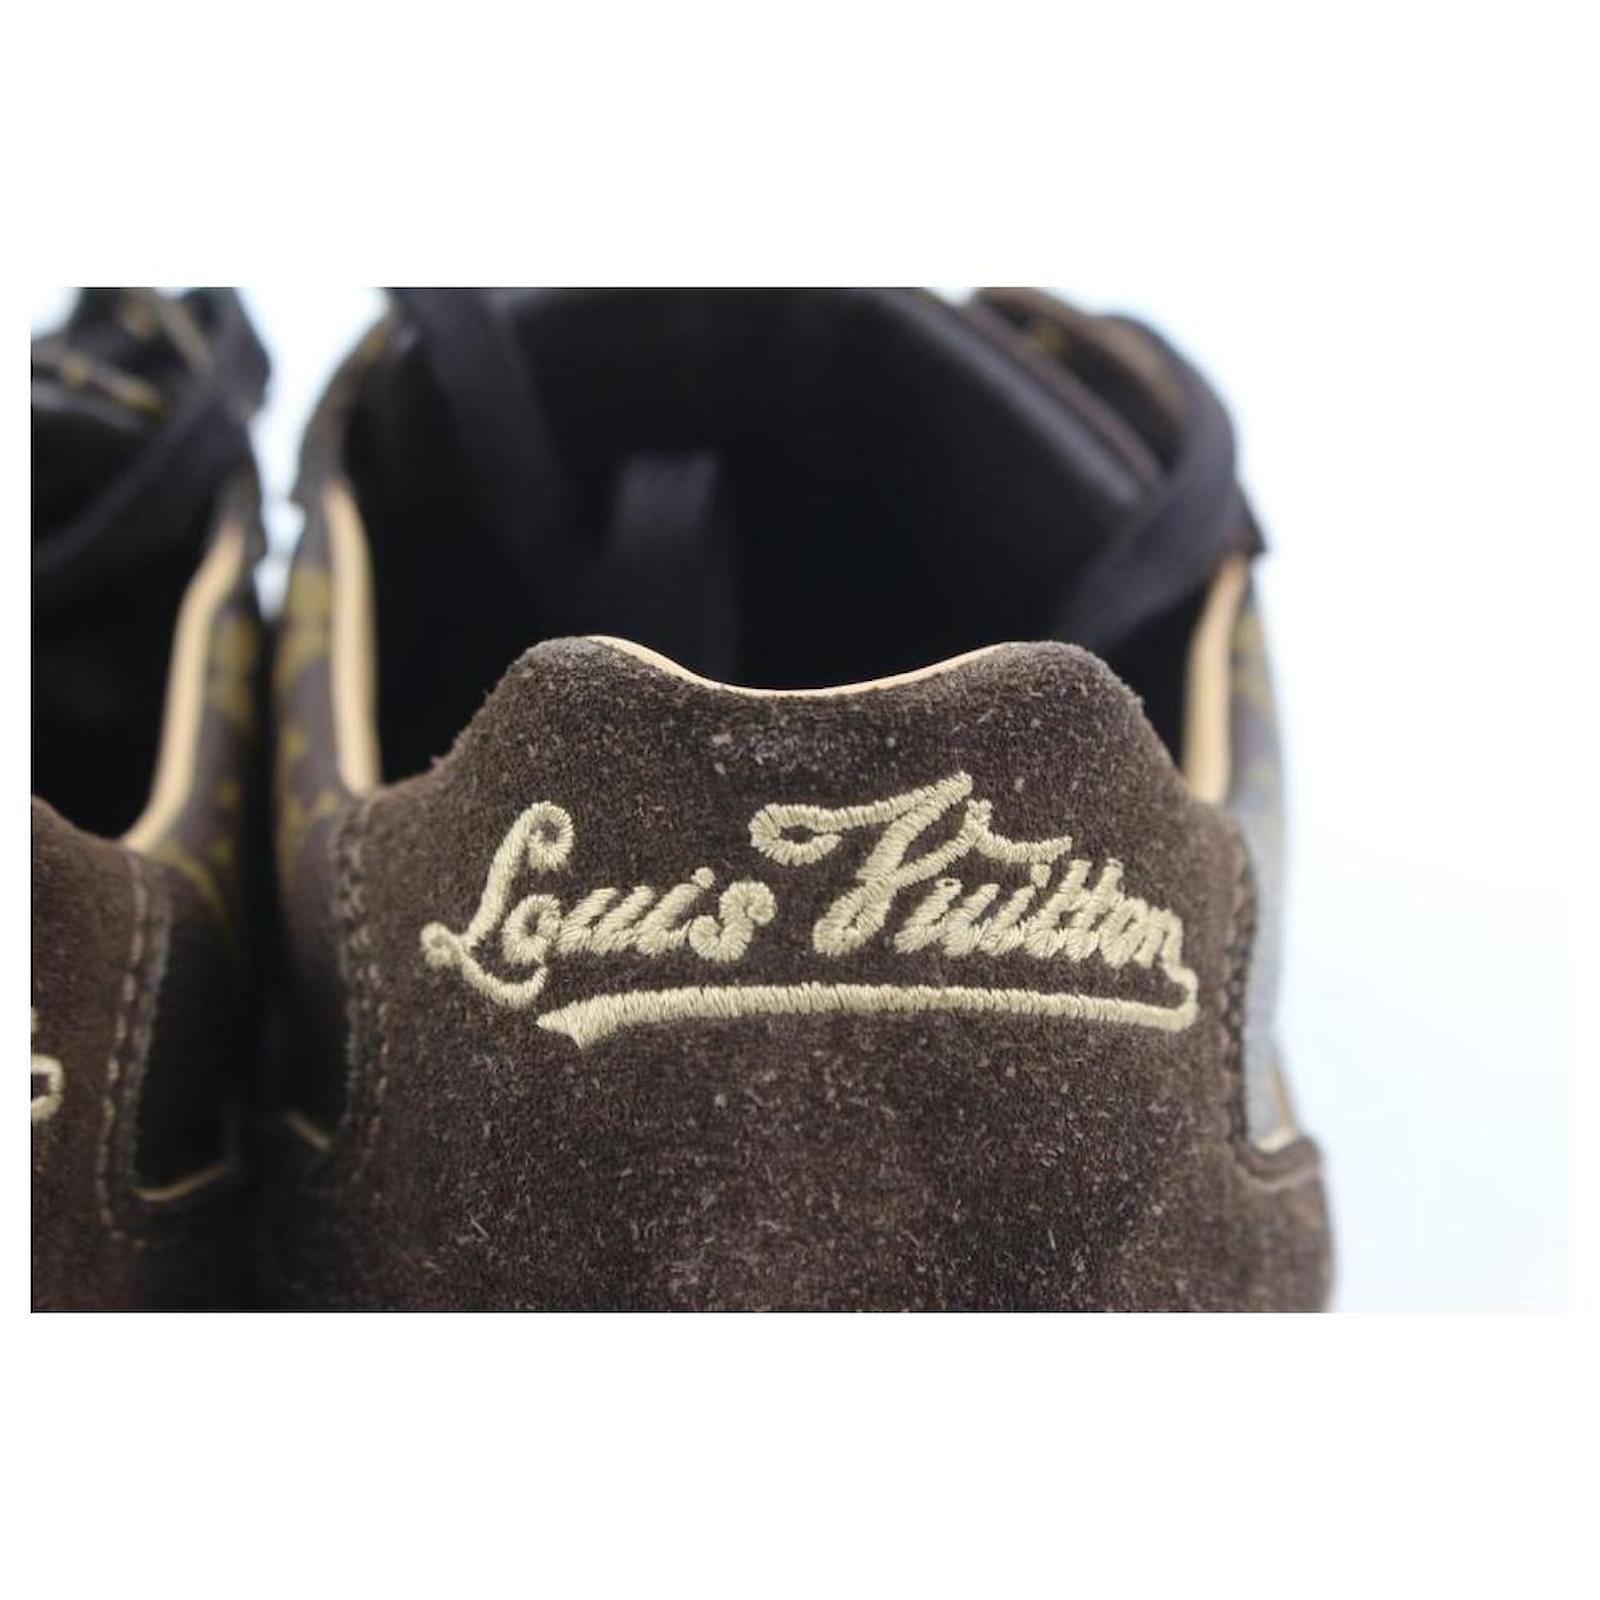 Louis Vuitton Men's 7 US Brown Suede Monogram Energie Sneaker Full